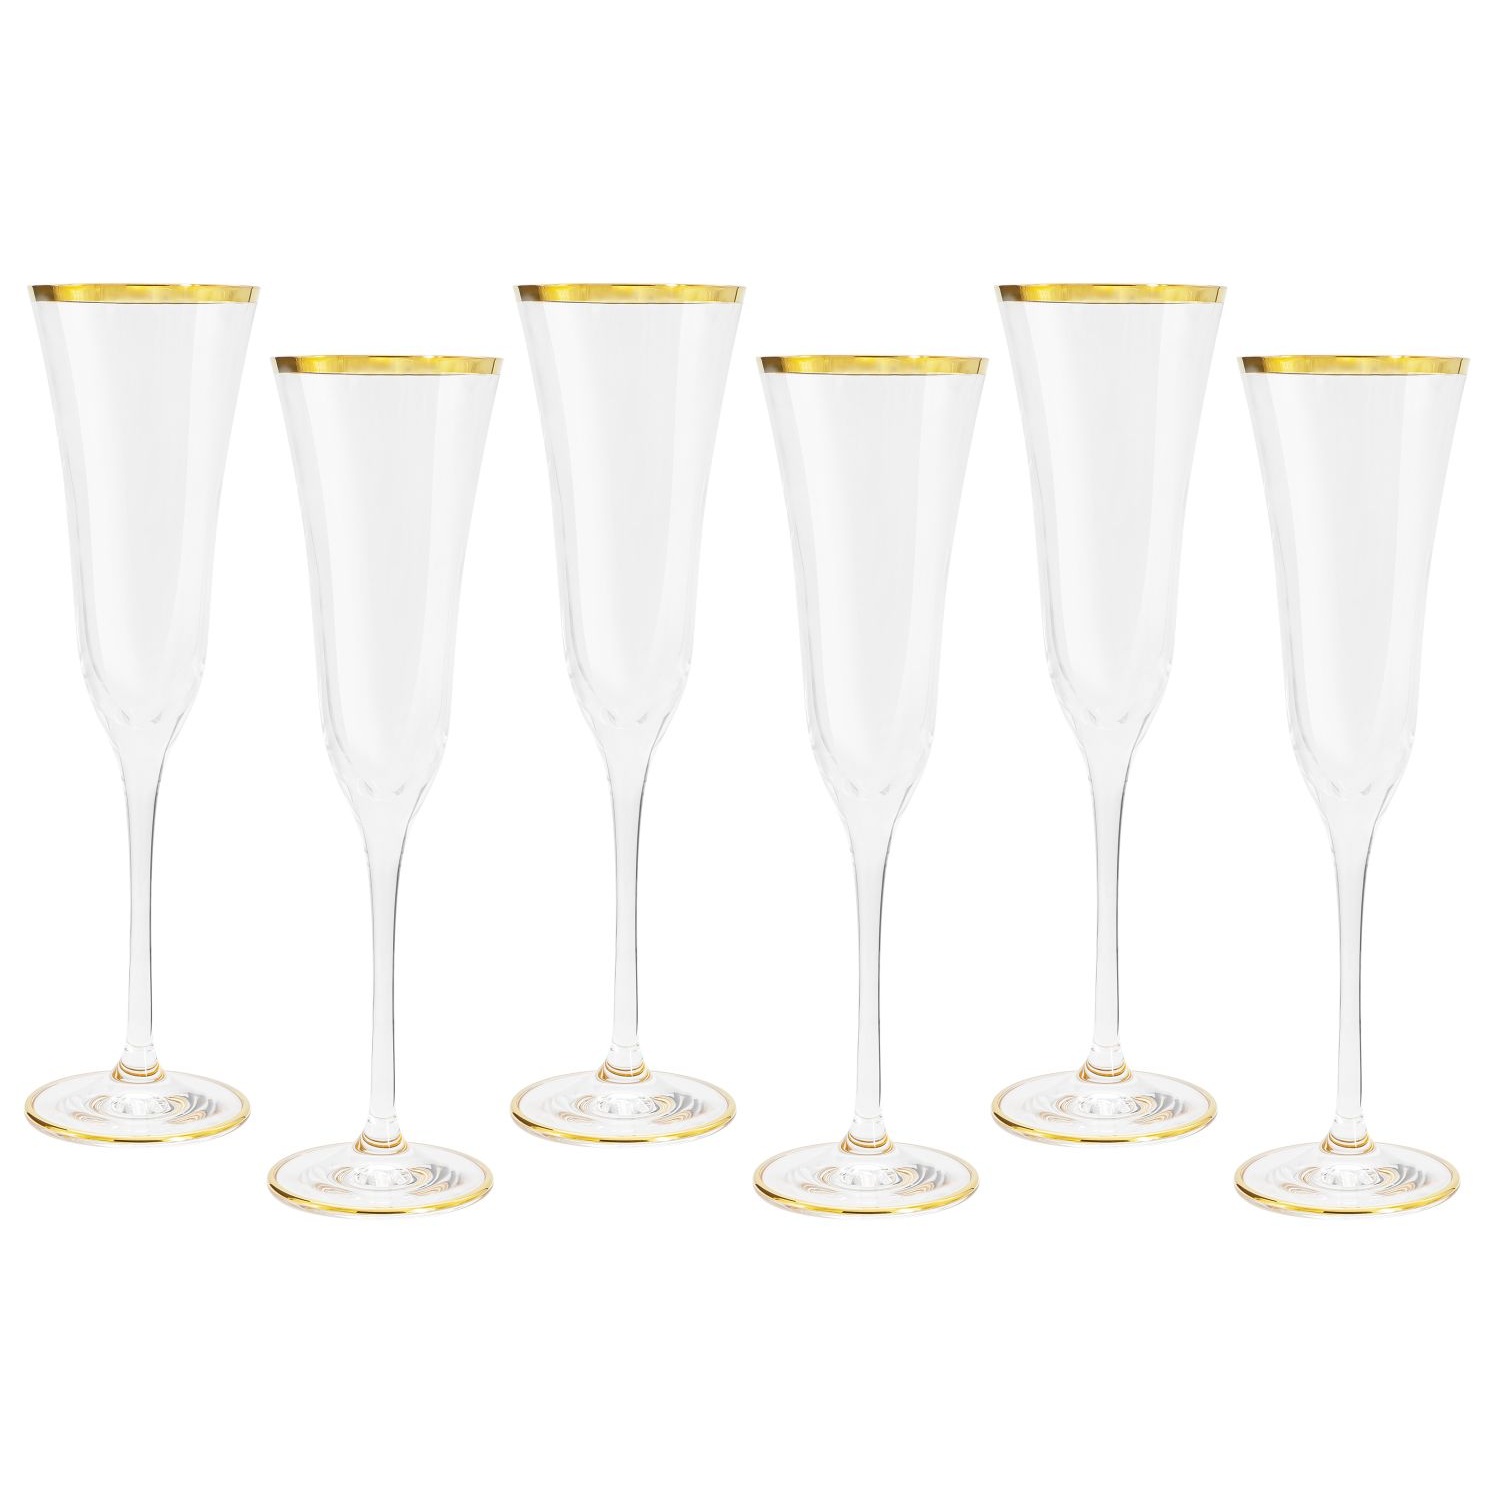 Набор бокалов для шампанского Same Сабина золото 6 шт набор бокалов для шампанского same сабина платина 6 шт